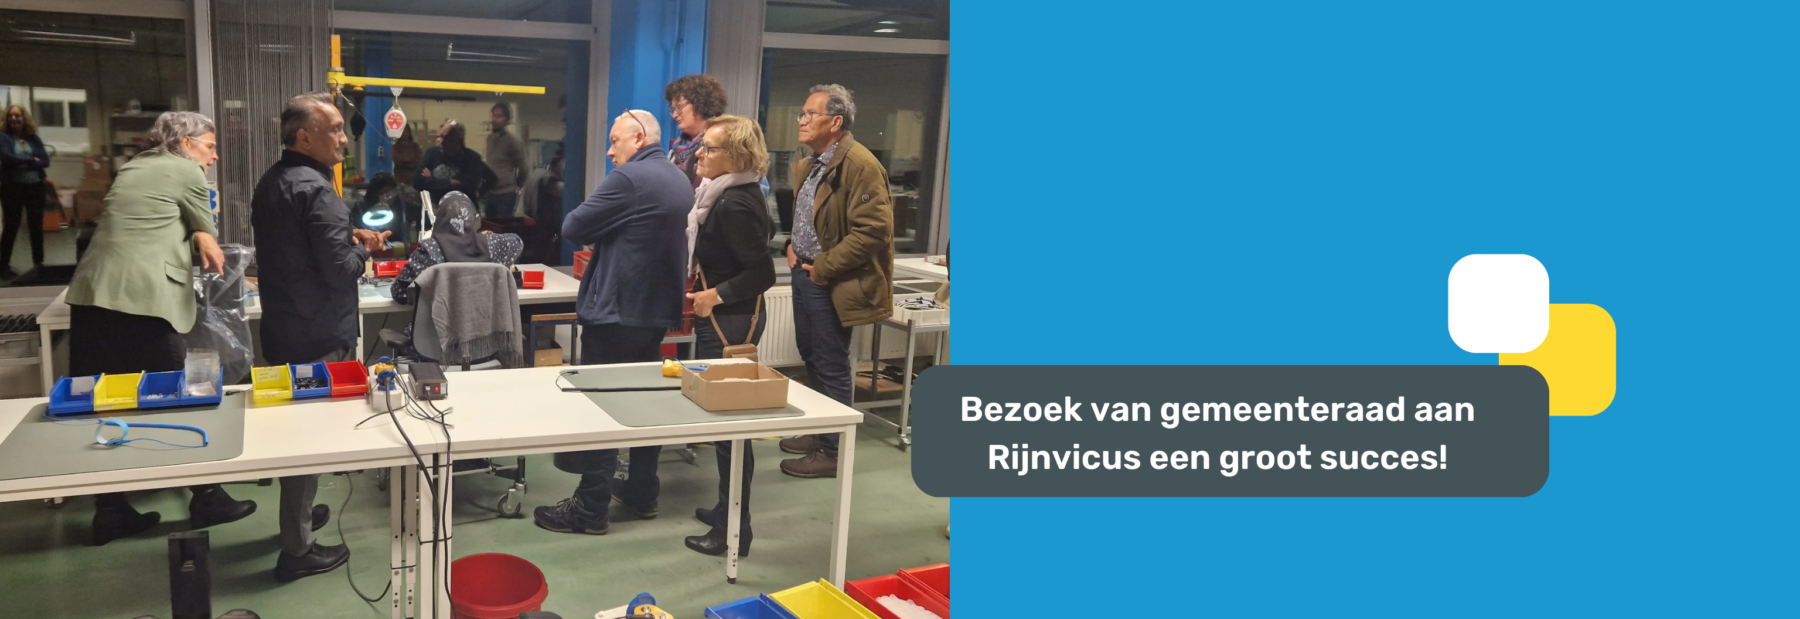 Bezoek gemeenteraad aan Rijnvicus